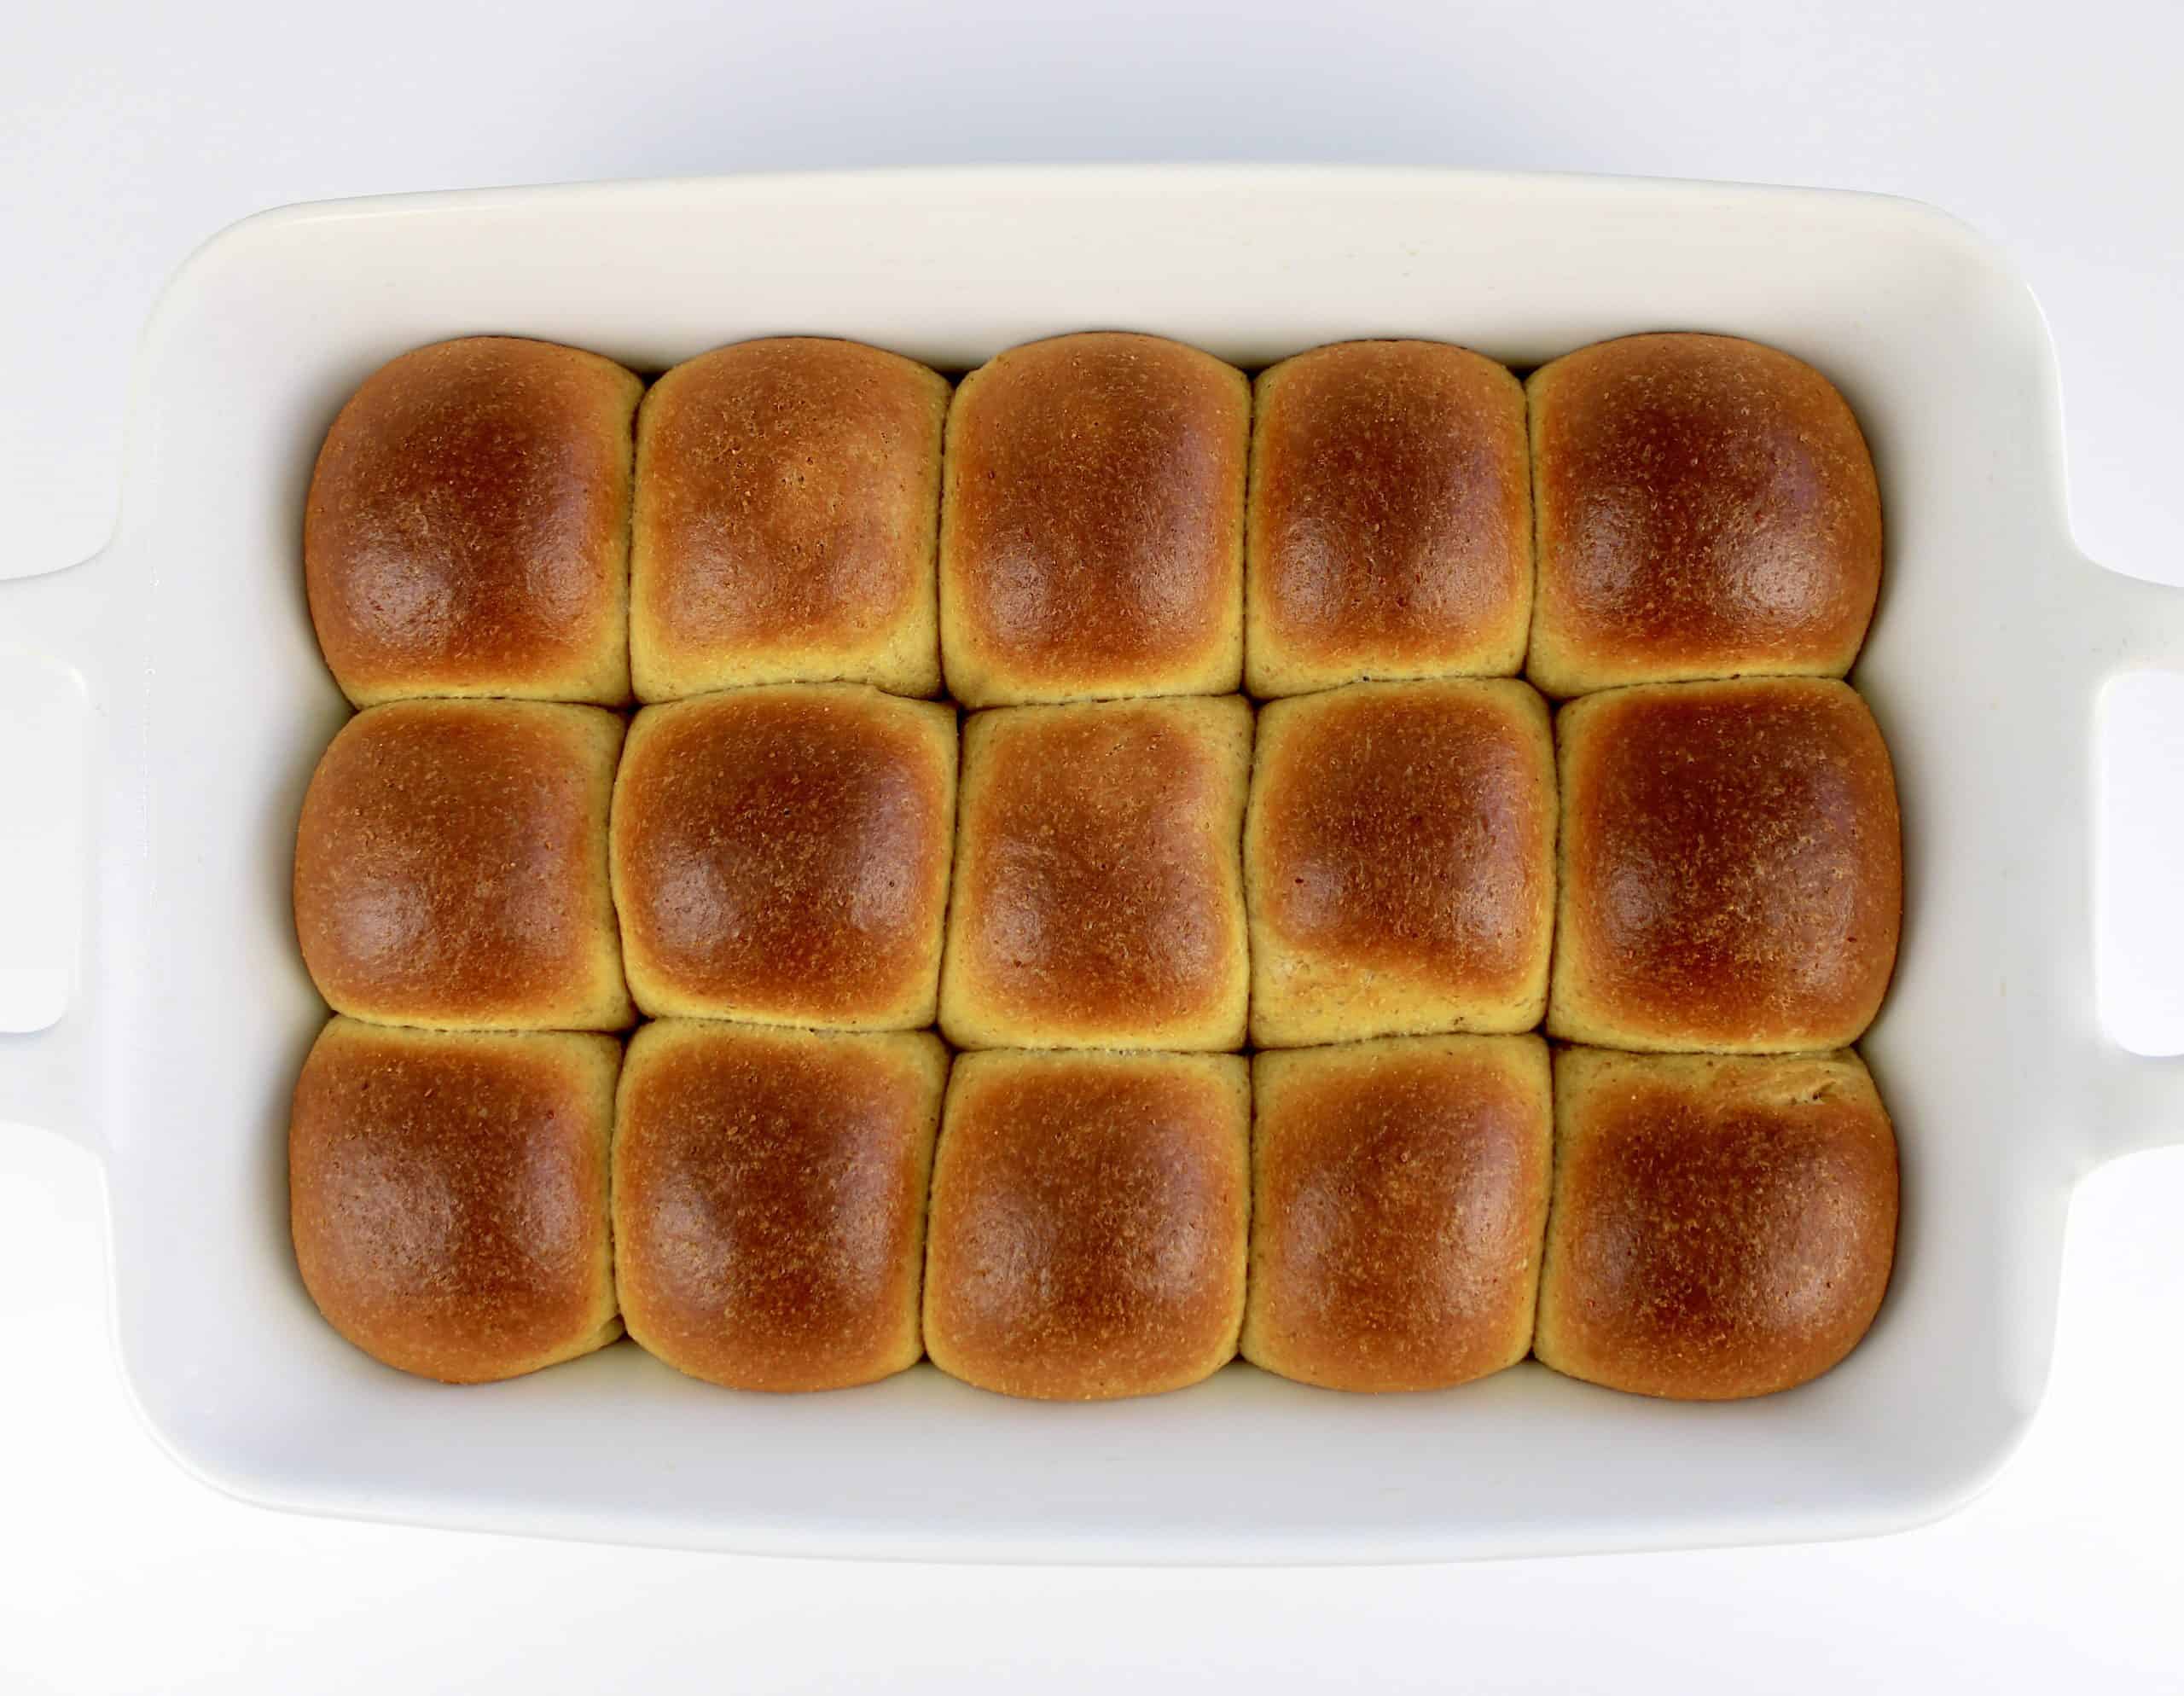 baked dinner rolls in white baking dish